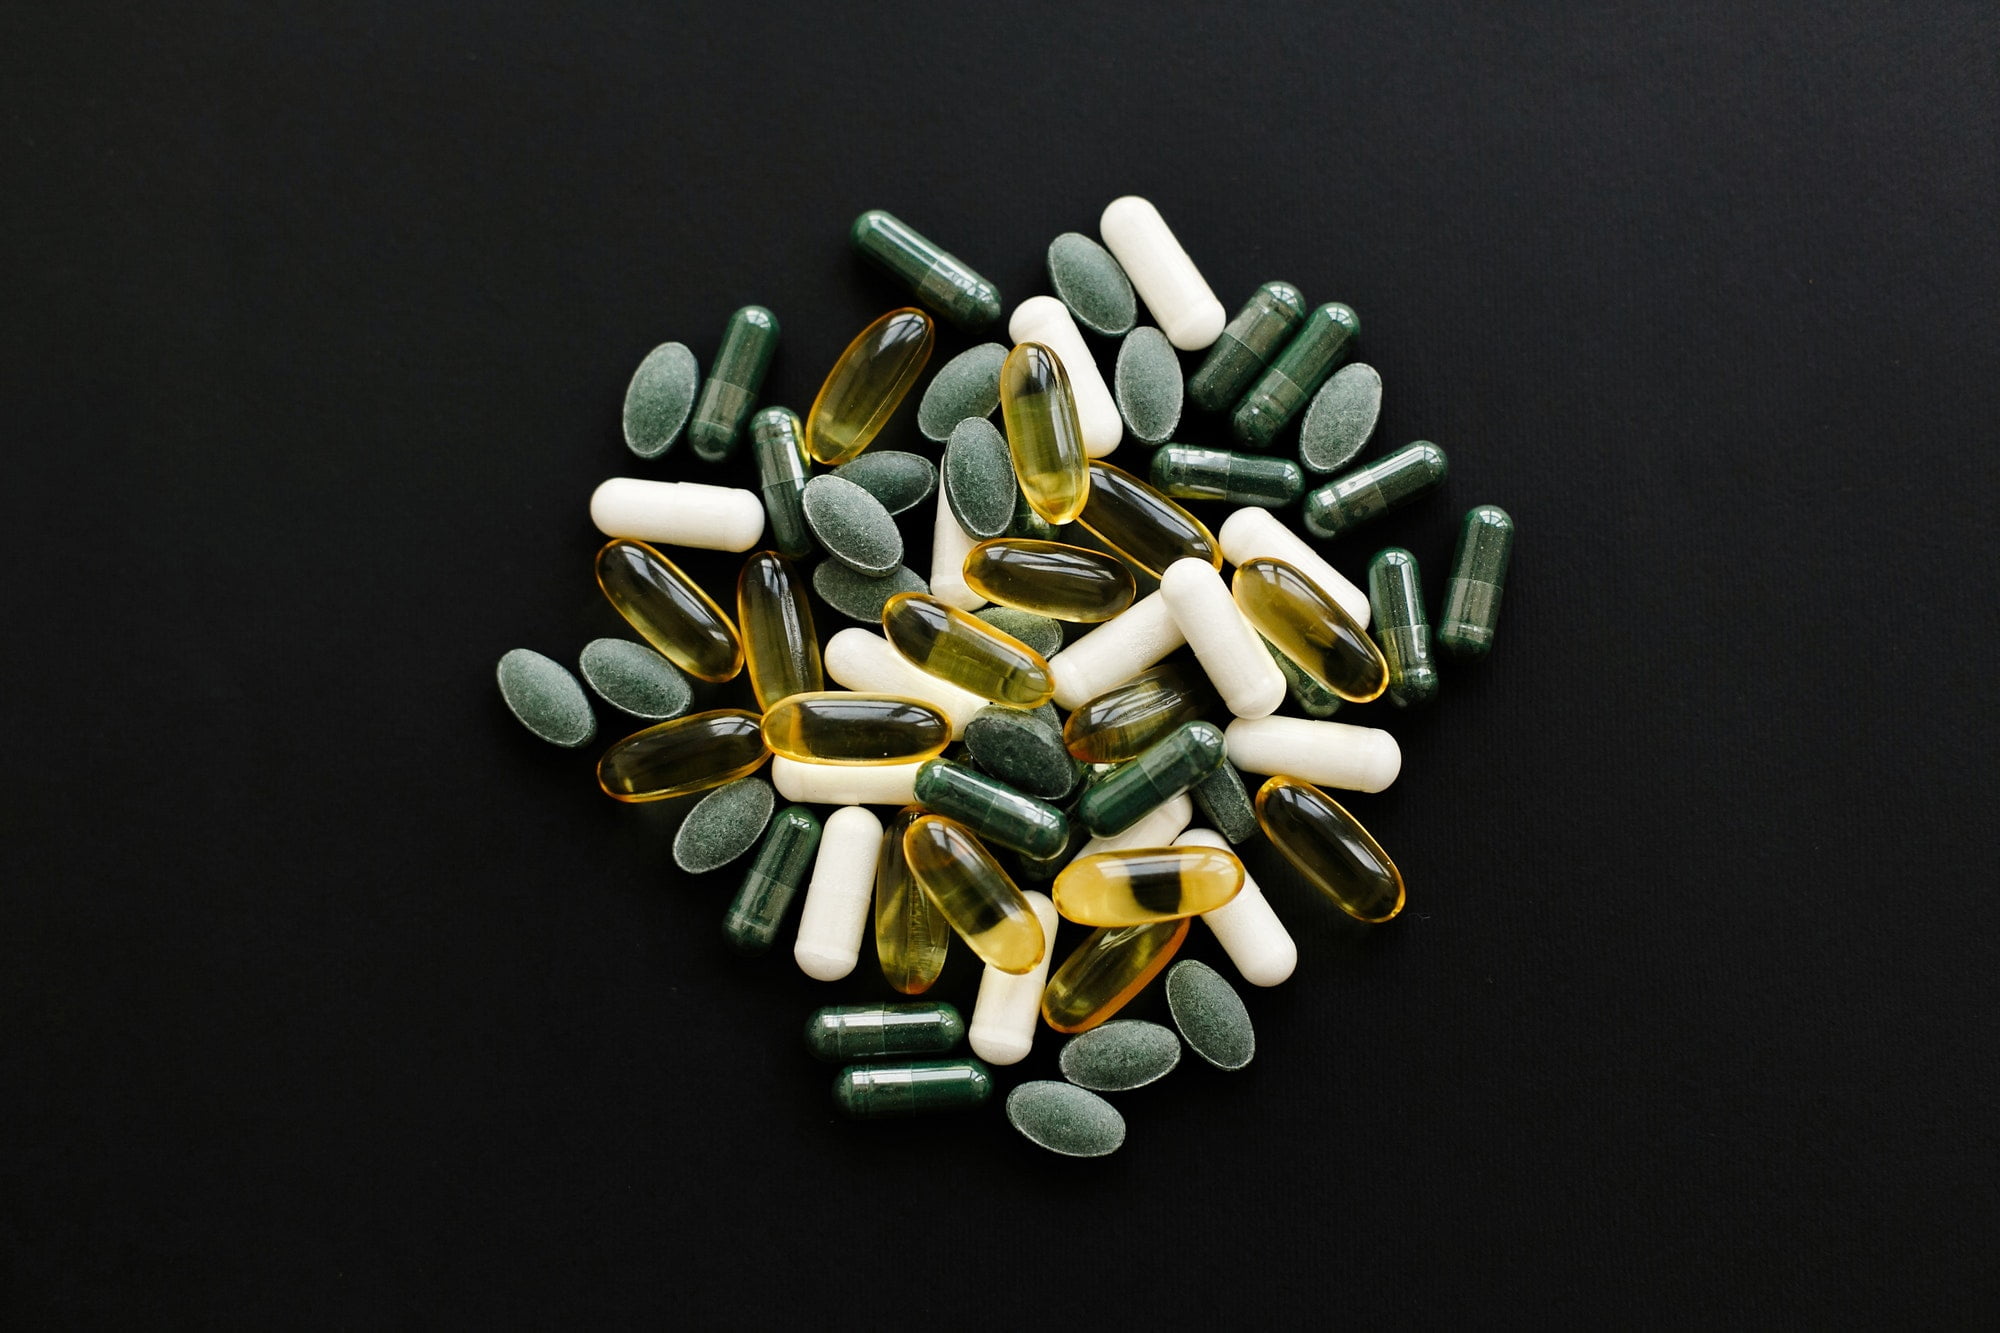 Vitamin nutrient tablets